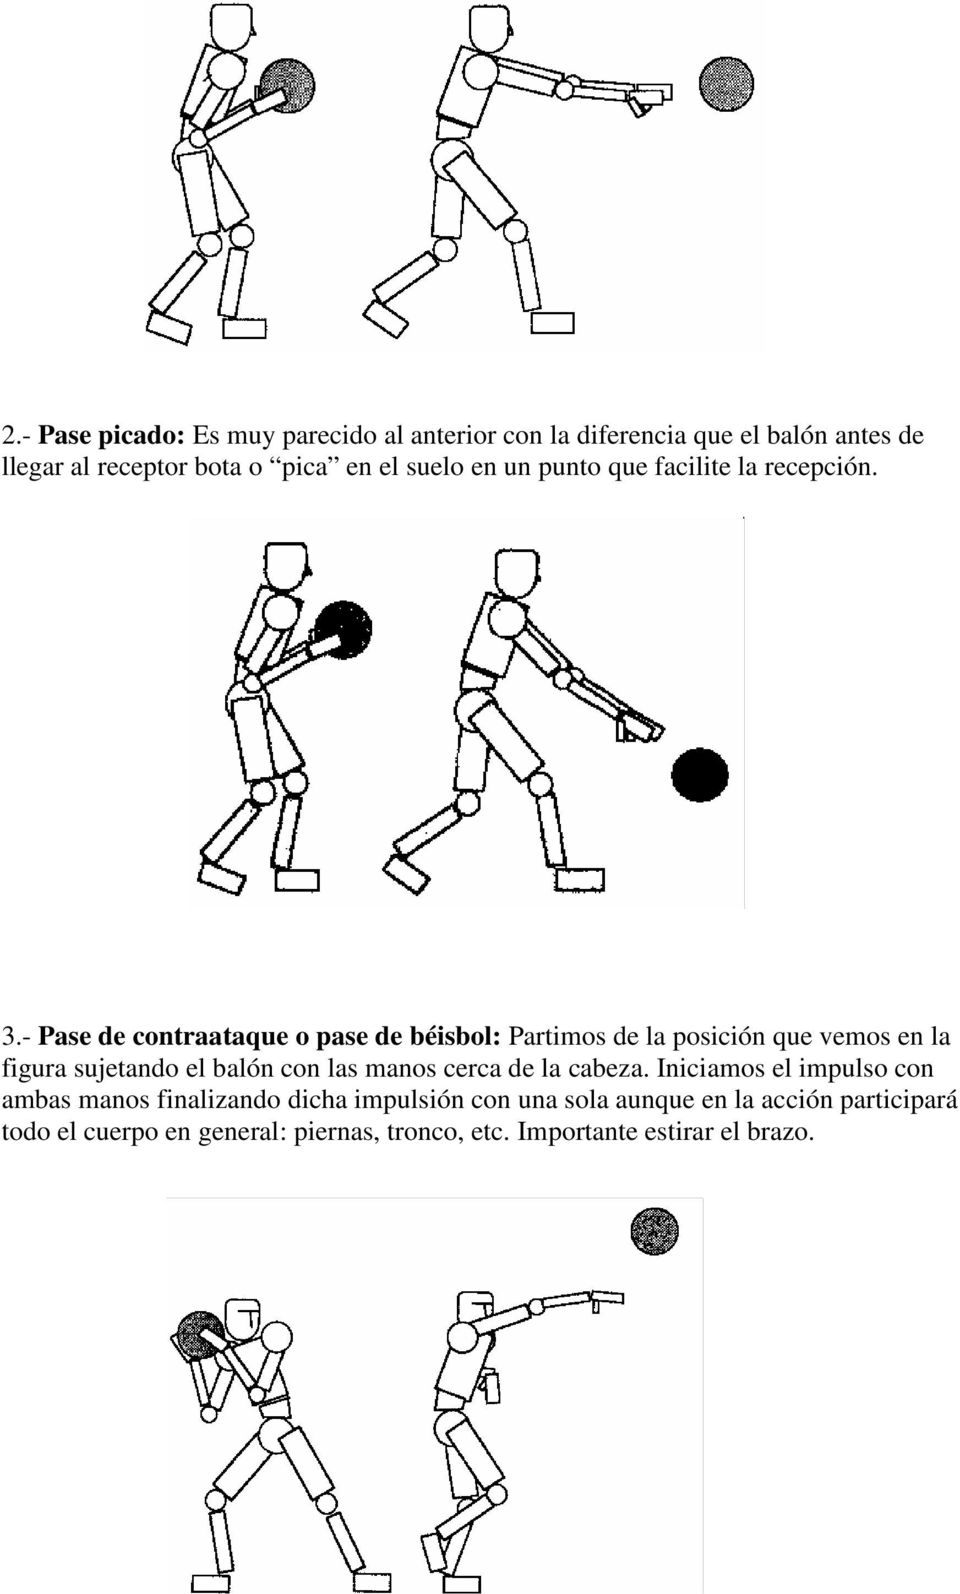 - Pase de contraataque o pase de béisbol: Partimos de la posición que vemos en la figura sujetando el balón con las manos